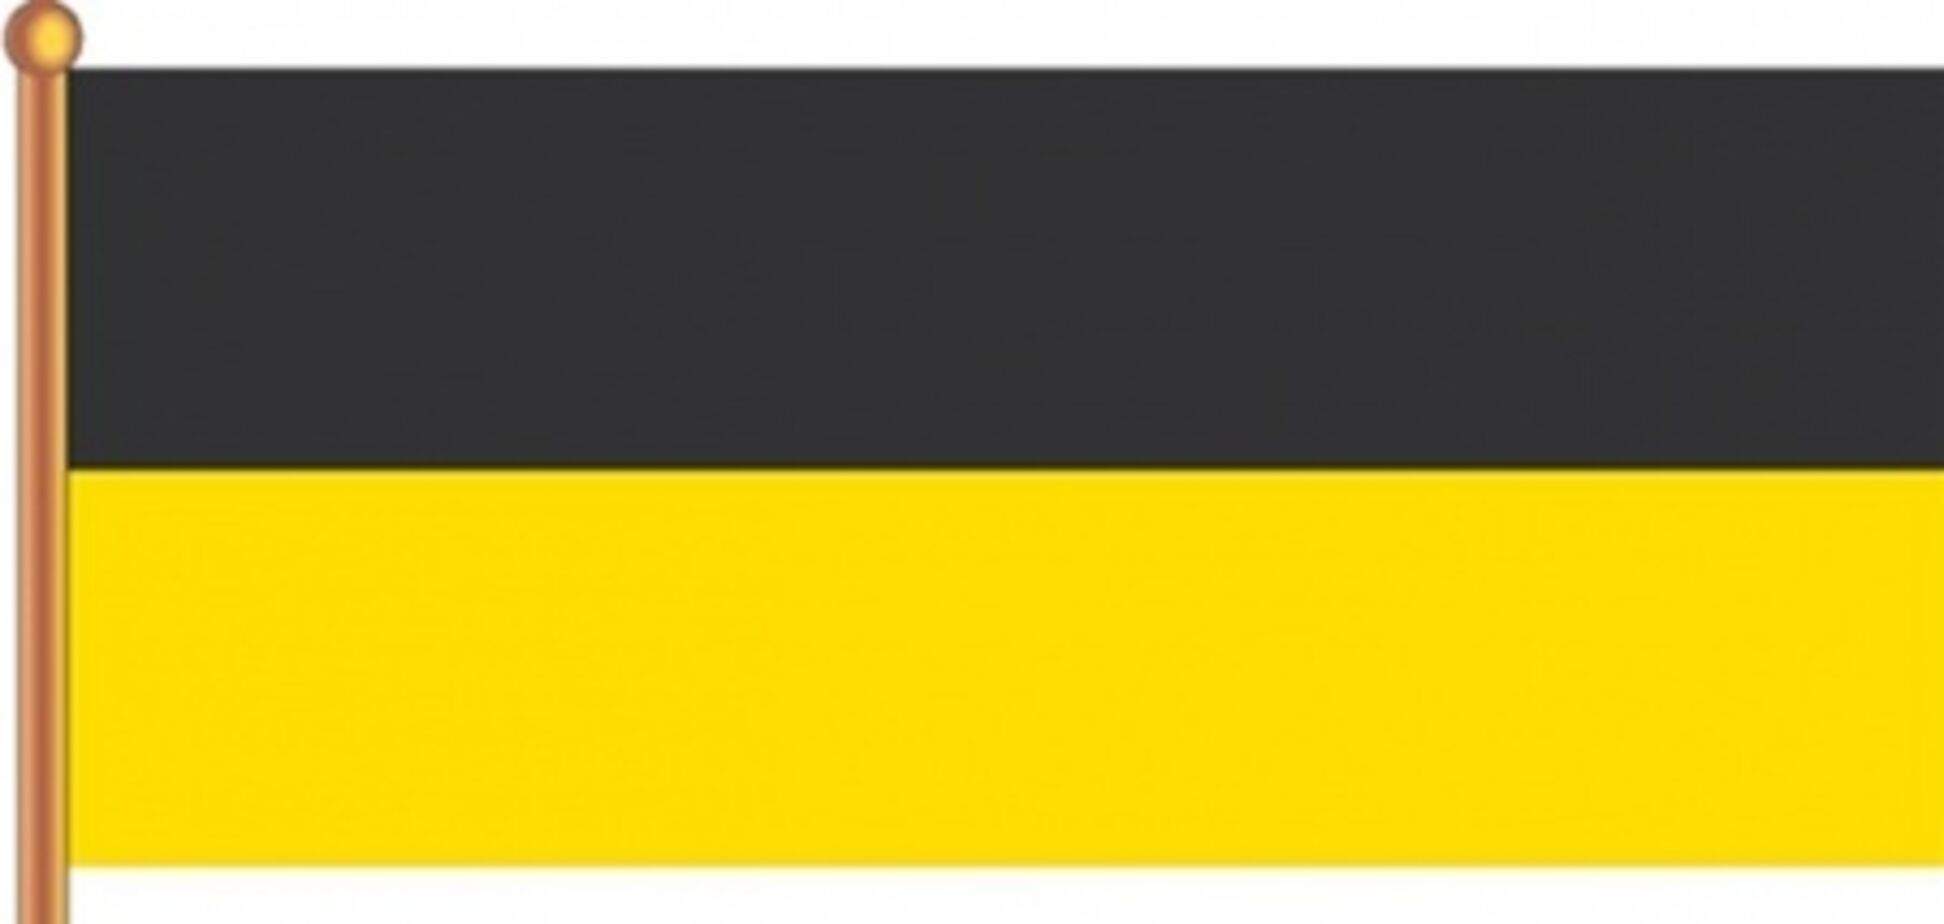 Жириновський пропонує повернути Росії чорно-жовто-білий прапор